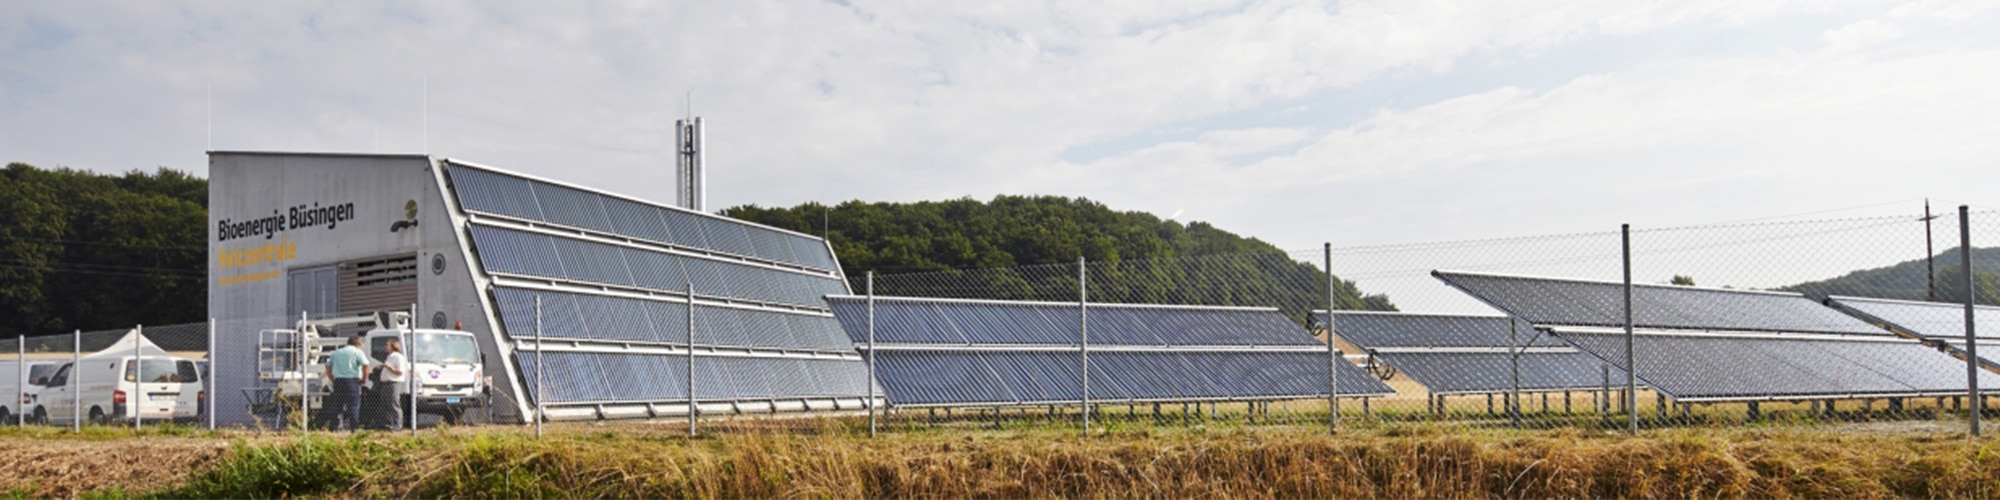 Bioenergiedorf Büsingen: Solar-unterstütztes Wärmenetz